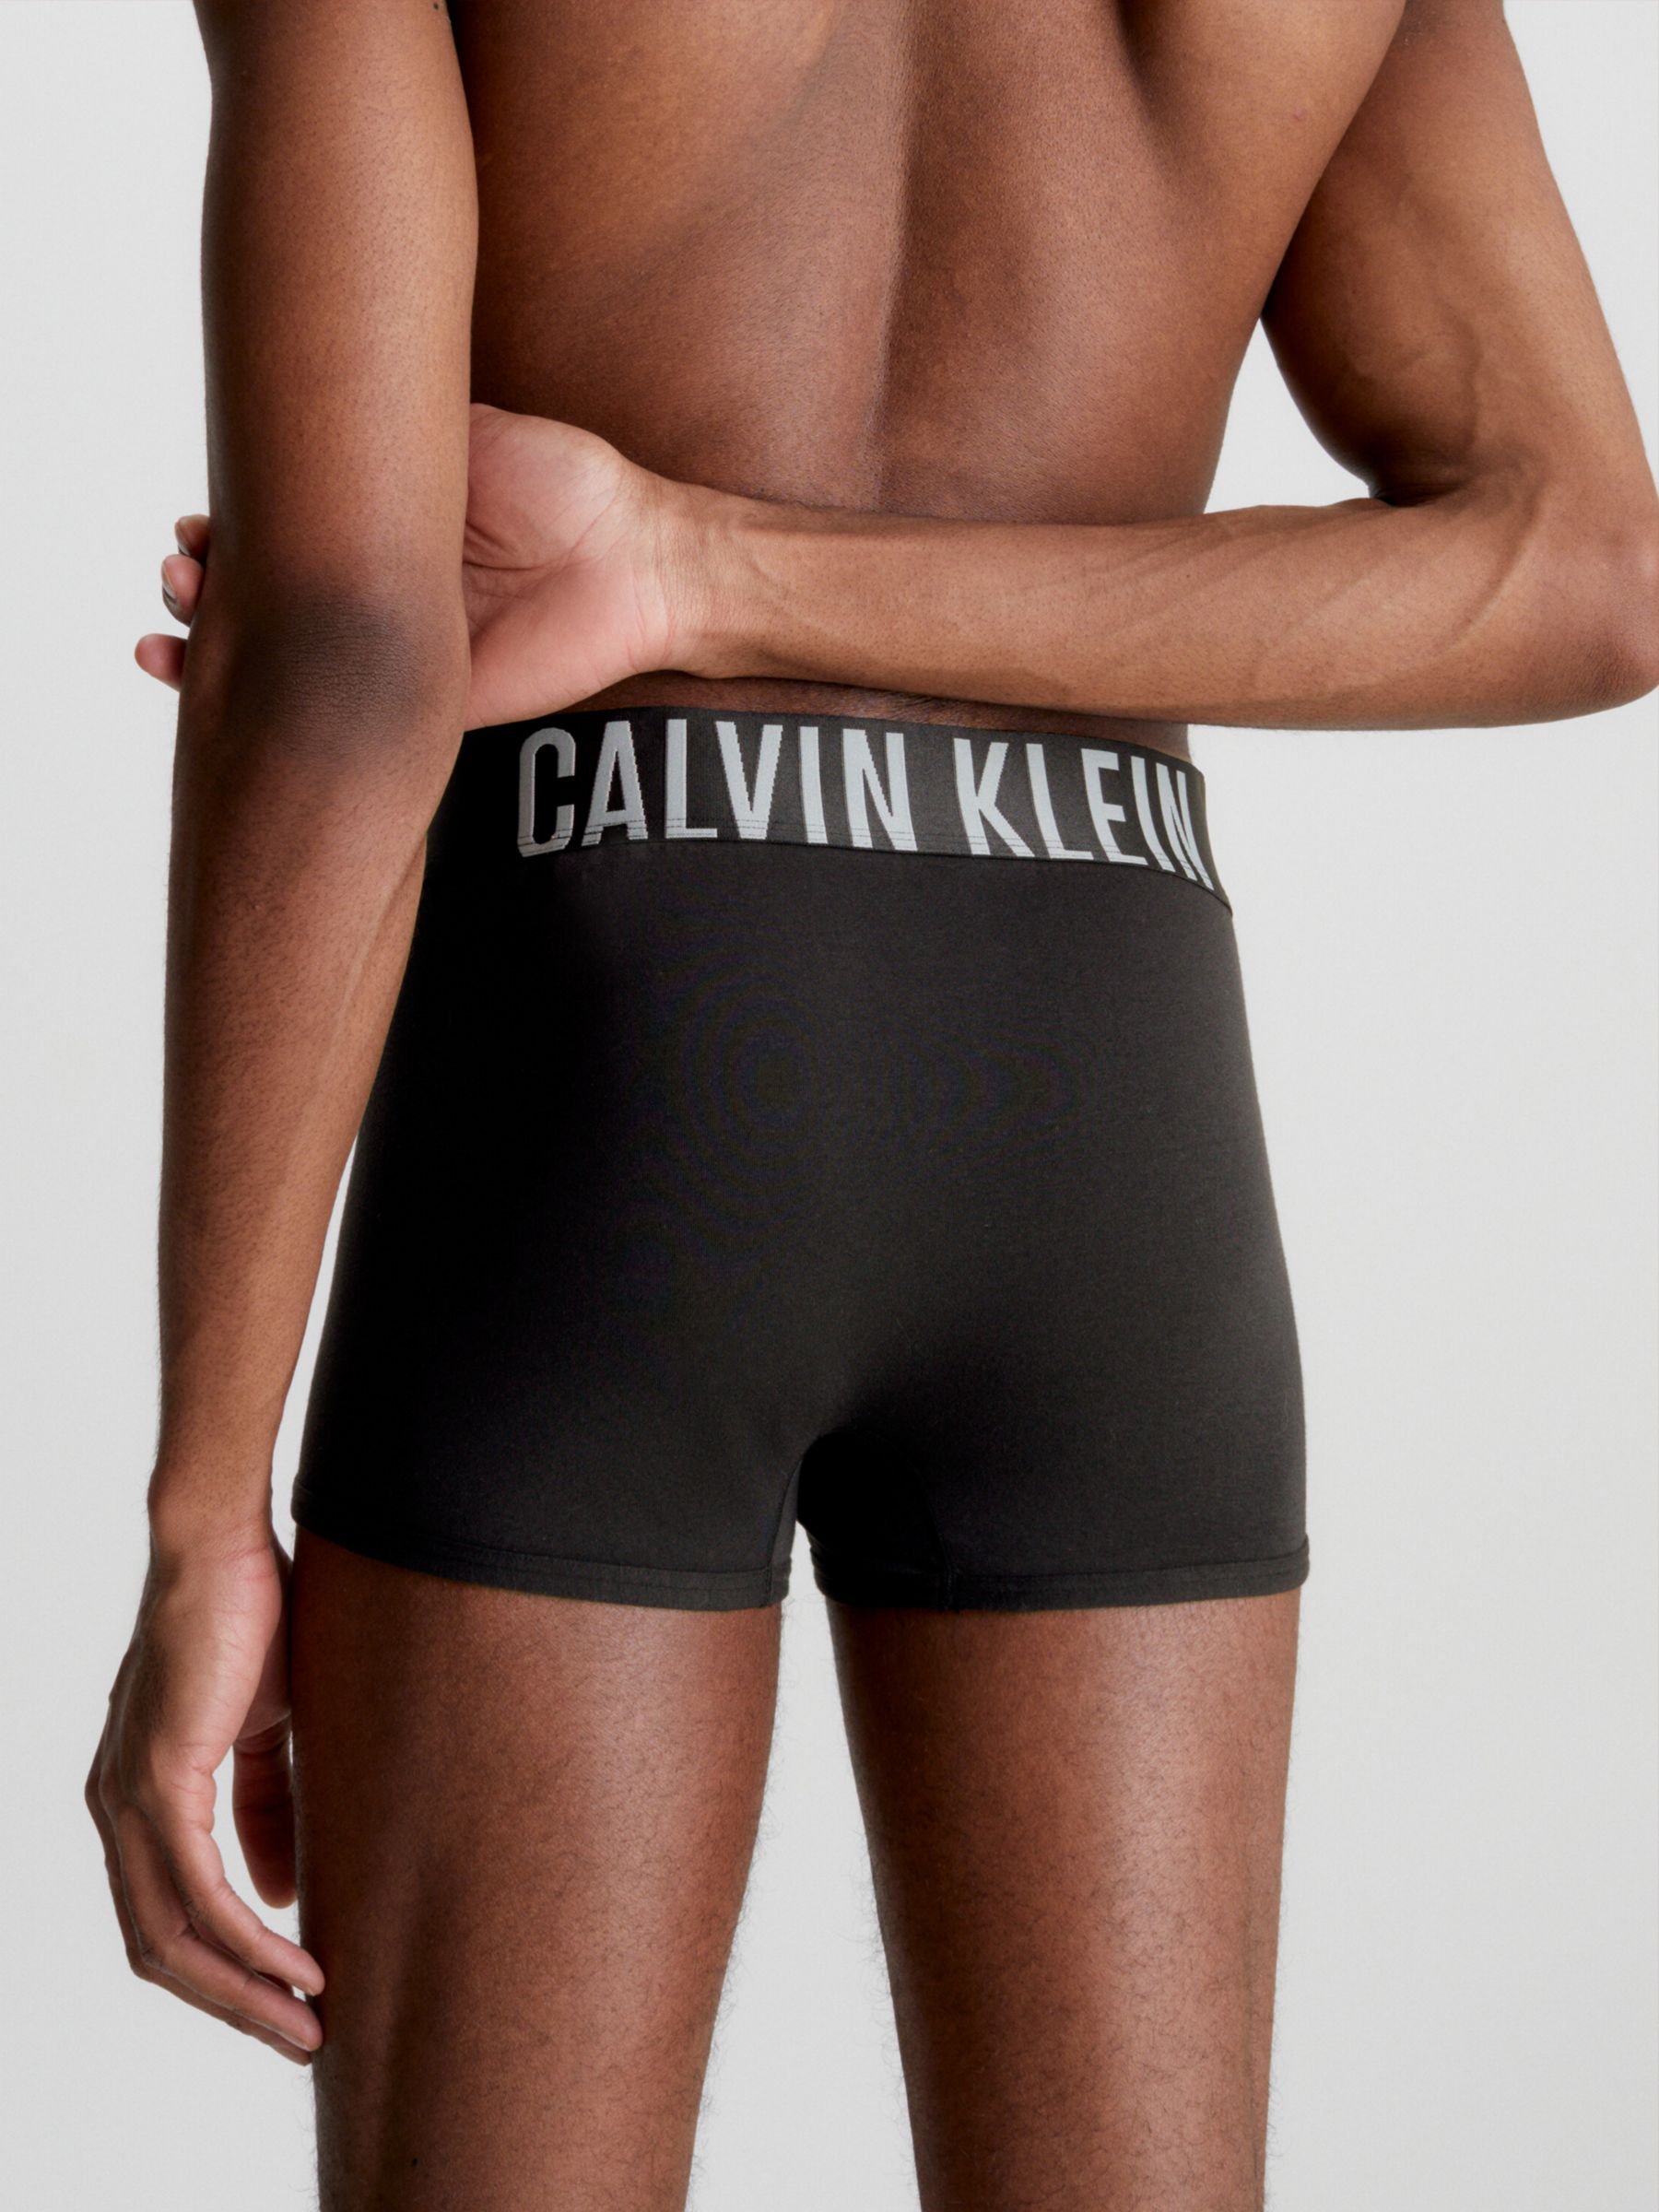 Calvin Klein - Girls Black Cotton Bra Tops (2 Pack